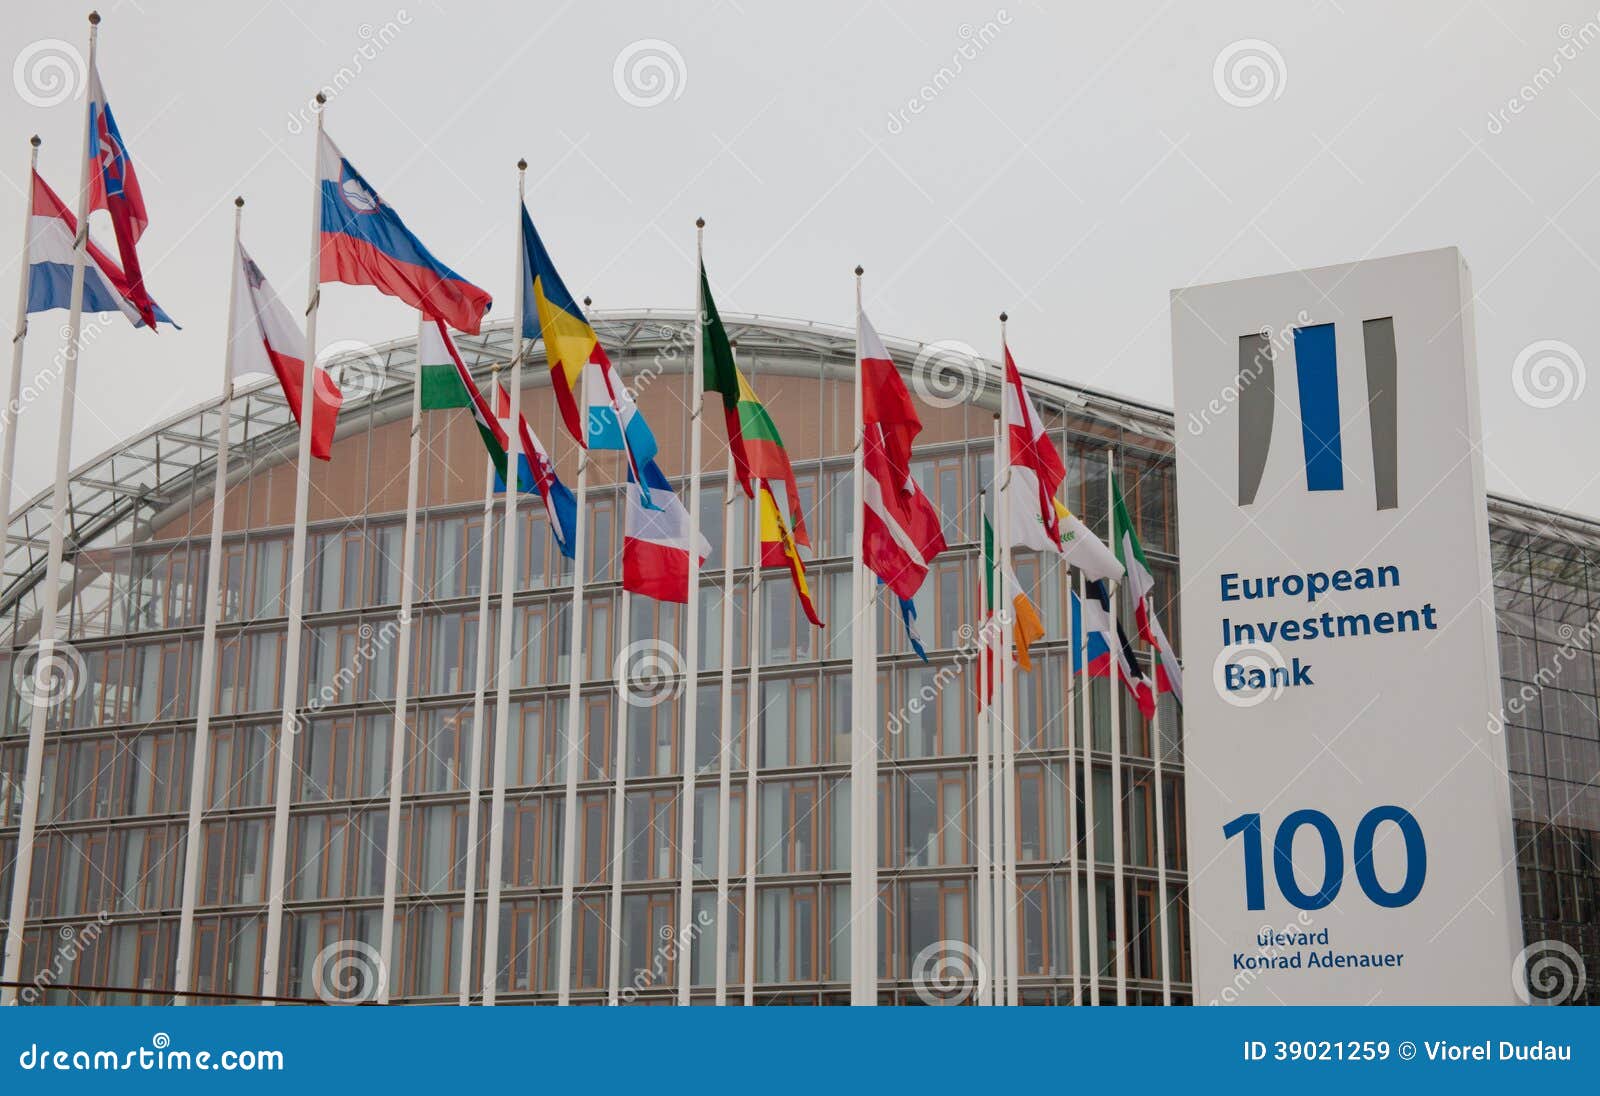 credito banco europeo de inversiones